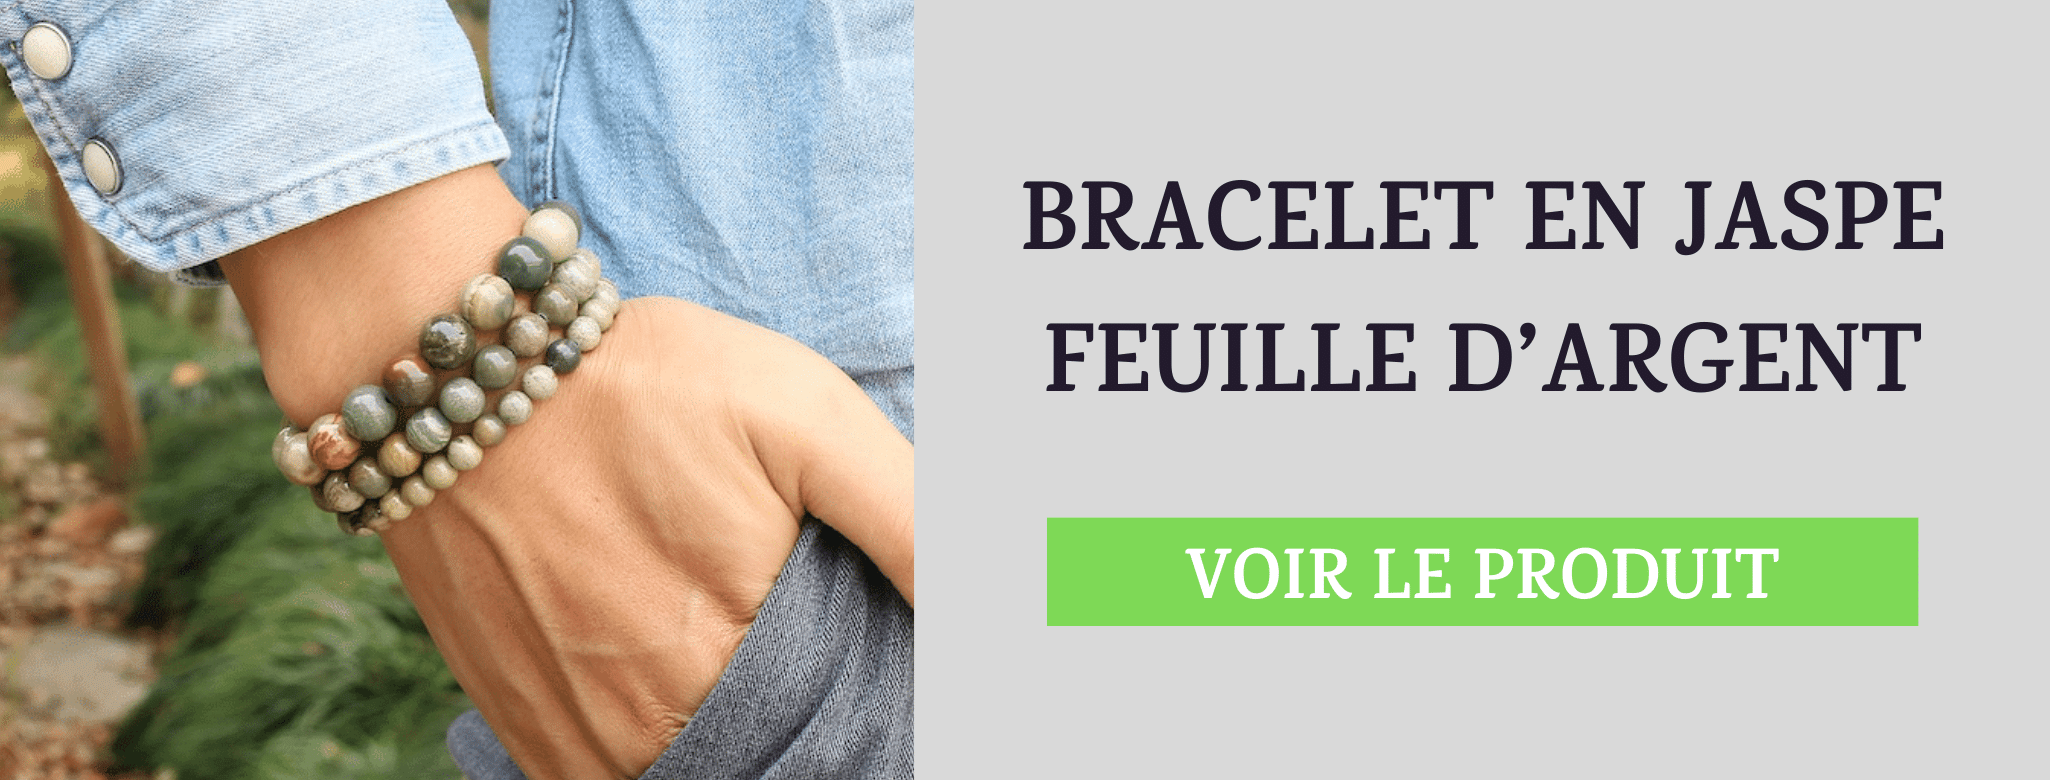 Bracelet Jaspe Feuille d'Argent